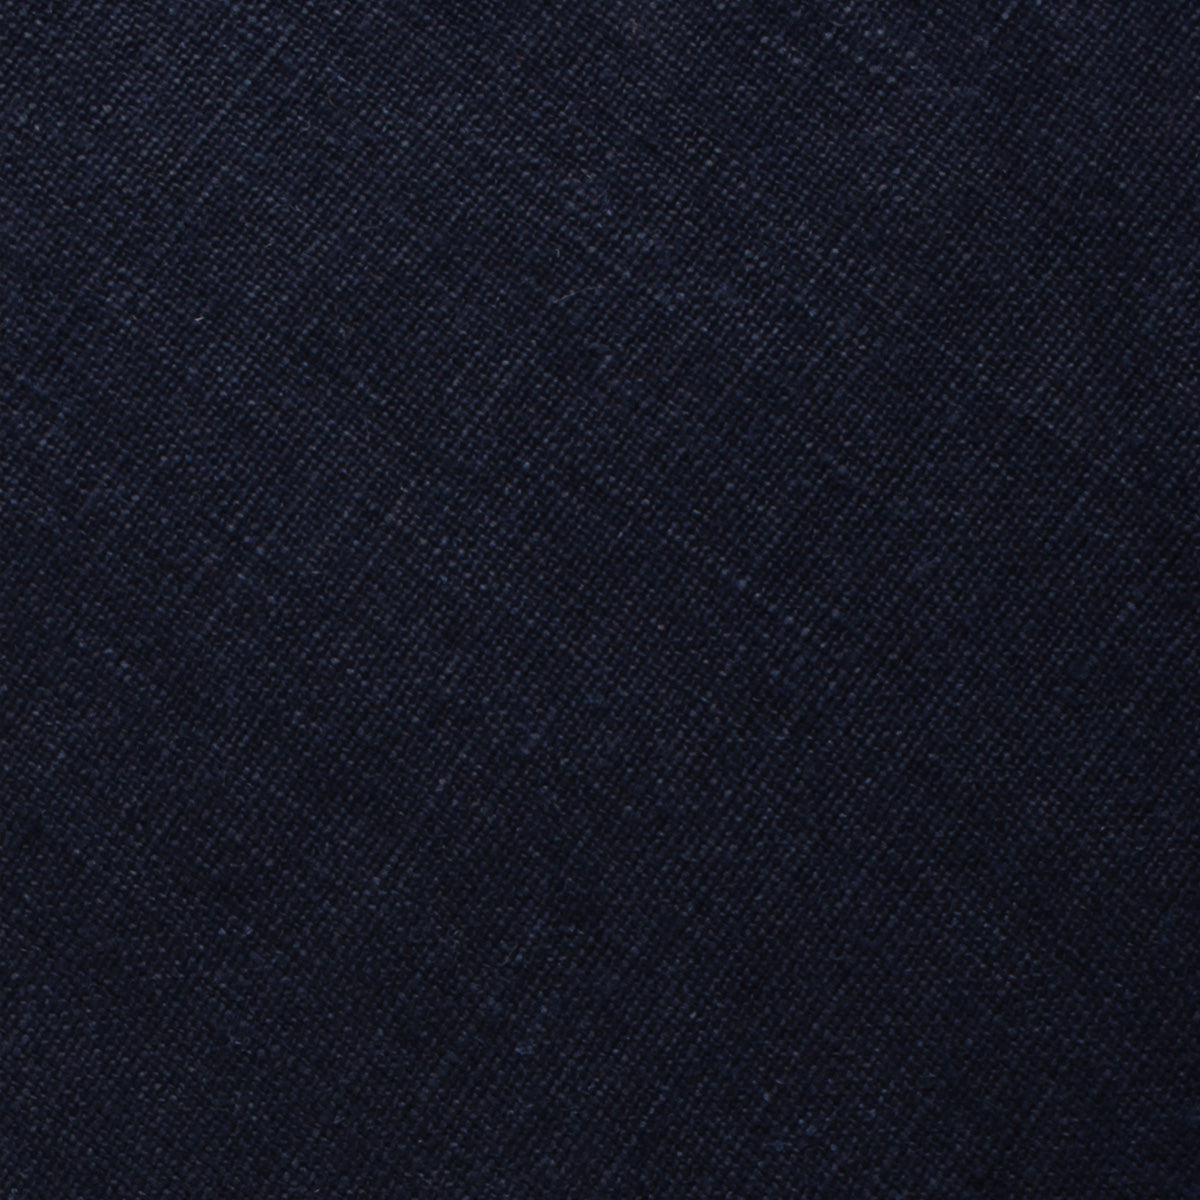 Dark Midnight Blue Linen Fabric Swatch